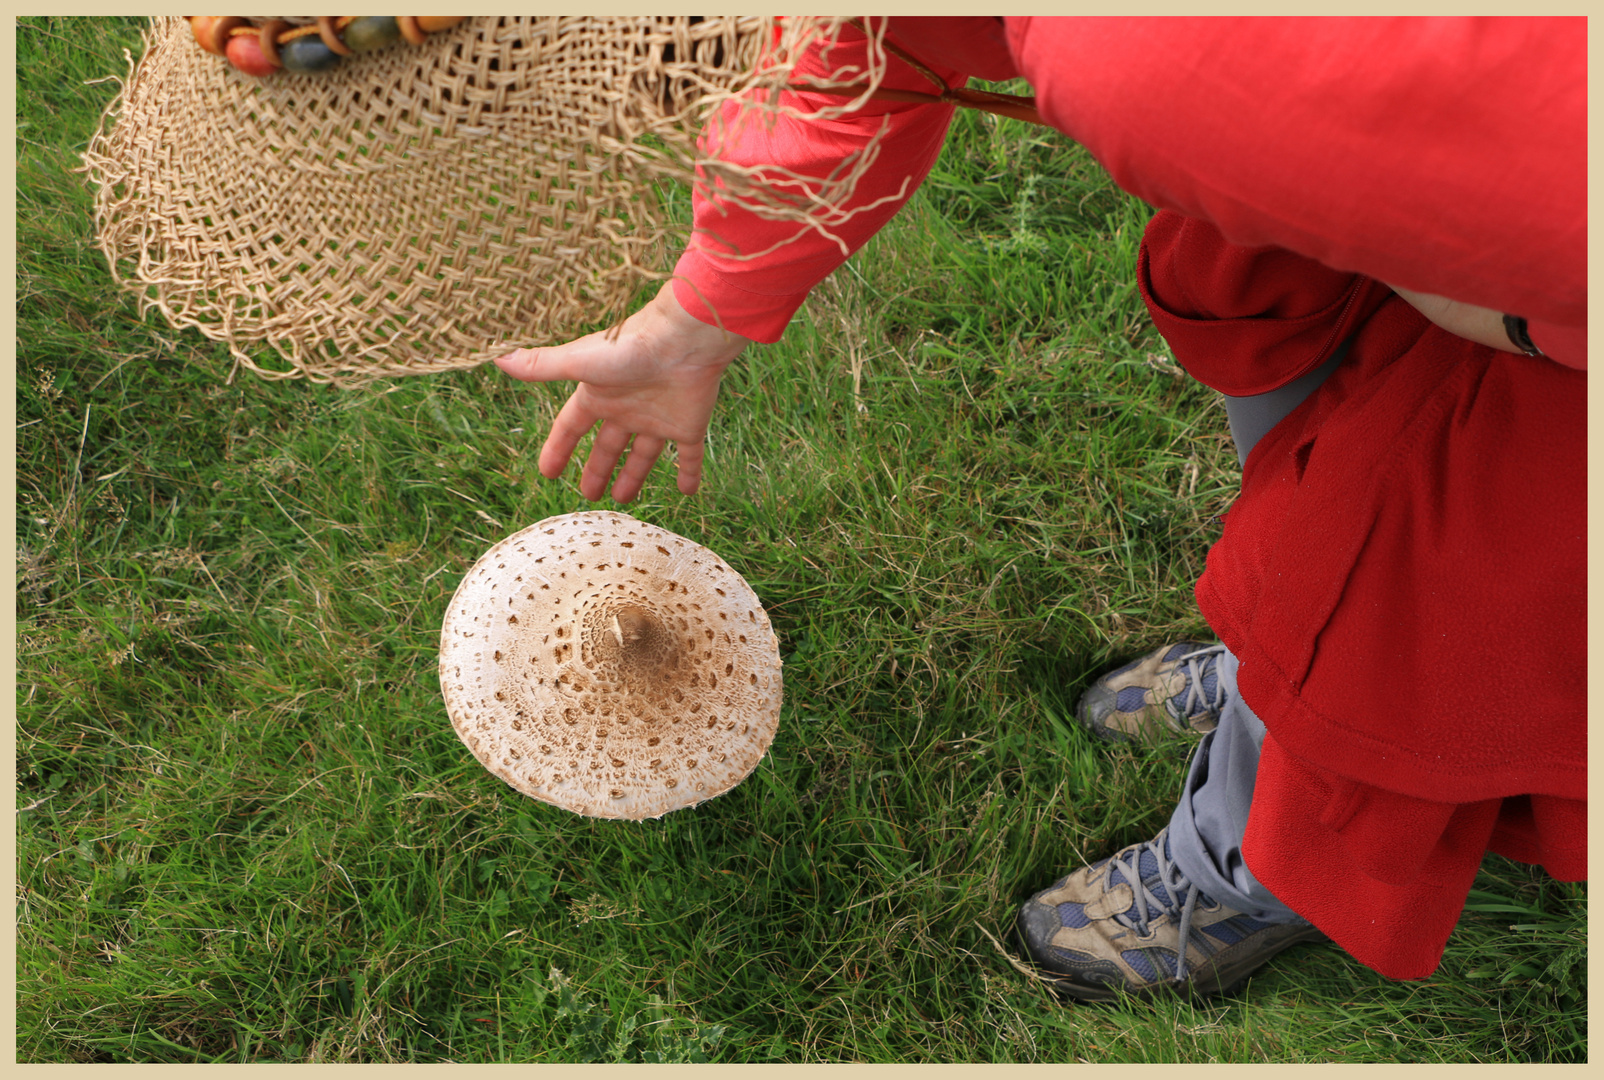 Lynn with big mushroom